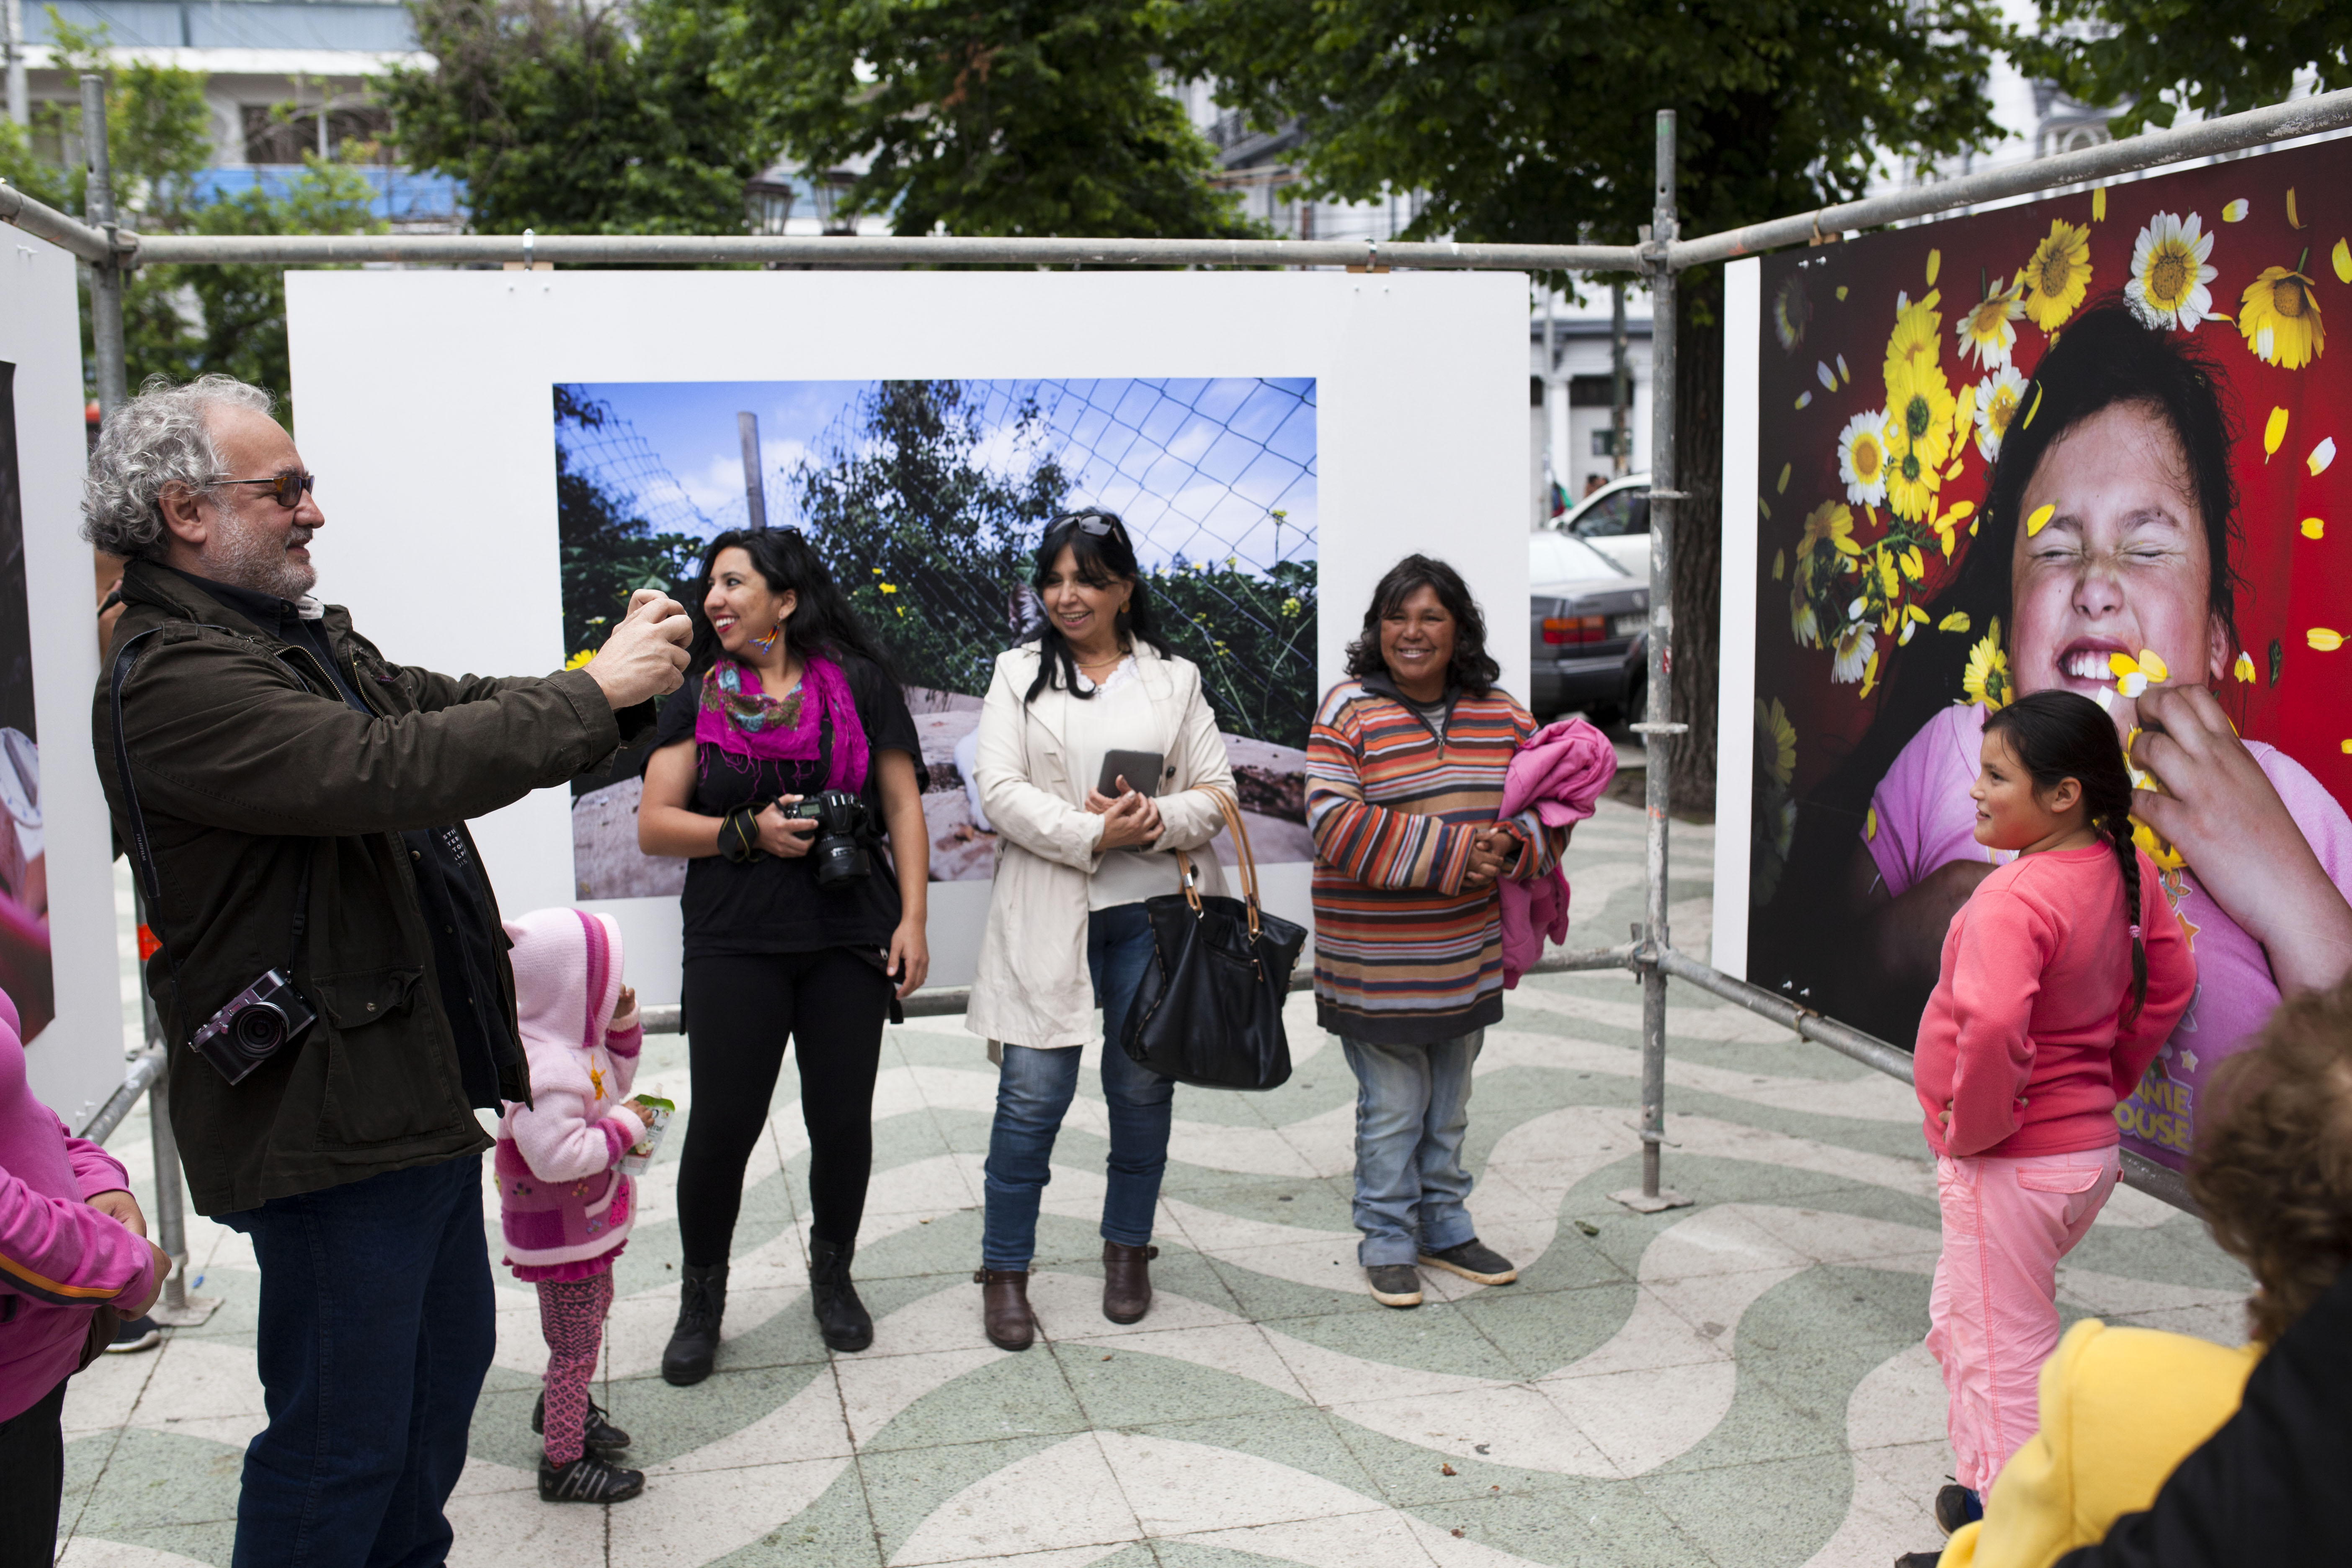 Inauguración de la Expposición "Reconstrucción del Álbum Familiar" de las Brigadas Fotográficas, FIFV 2015. Fotografías de Patricio Miranda.